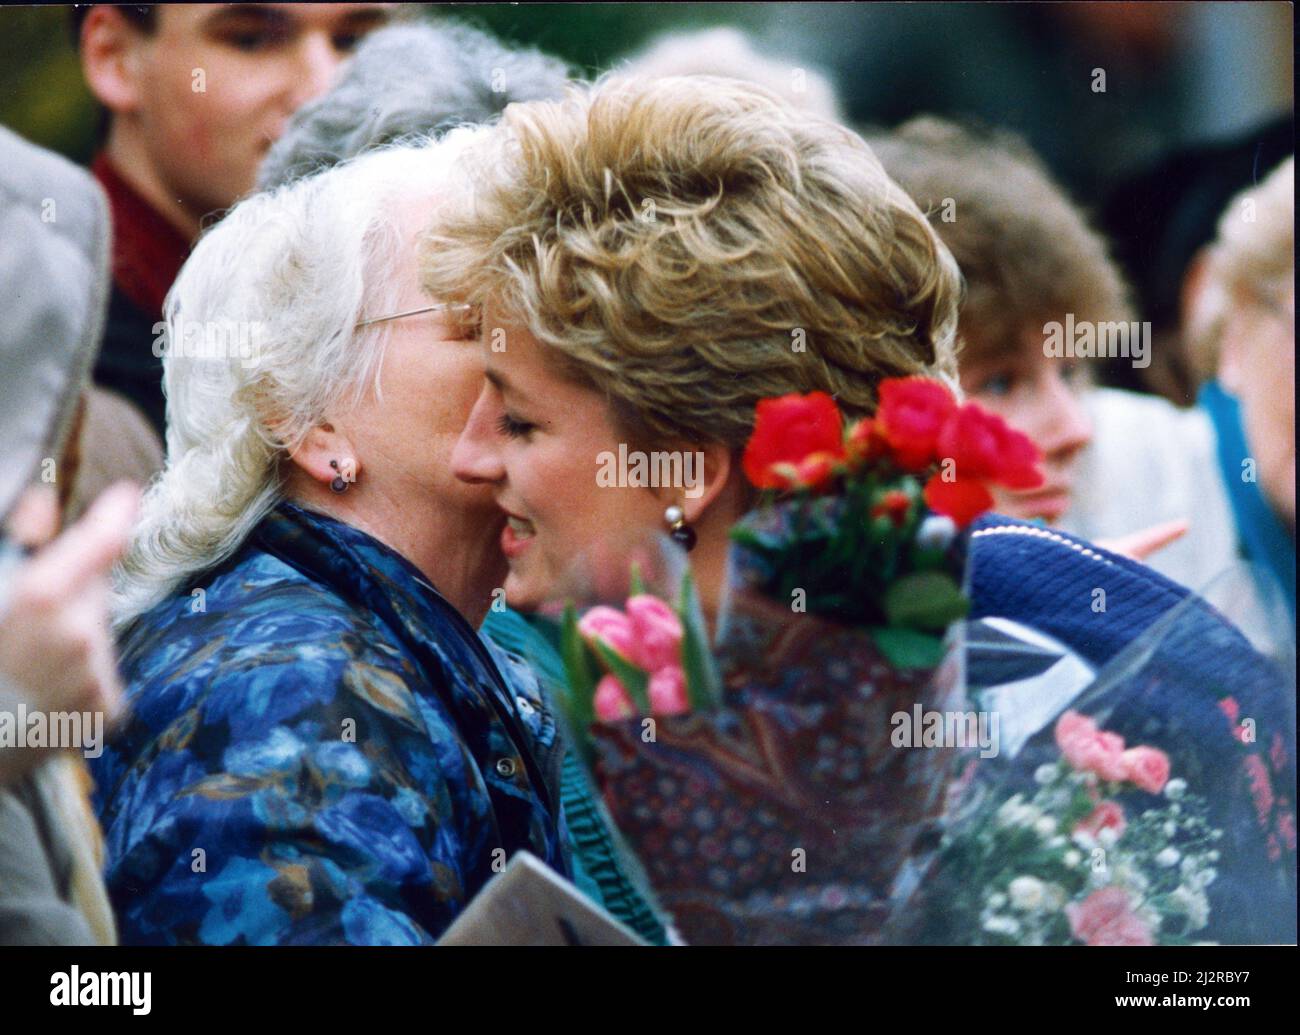 La princesse Diana, S.A.R. la princesse de Galles, salue les adeptes lors de sa visite dans le nord-est des Anglais. La princesse a visité l'organisme de bienfaisance Turning point à Whitley Bay et Interconnection Systems. Ici la princesse reçoit des fleurs, un câlin et une carte de Teresa Moïse ce jour aussi, le 9th décembre 1992, la princesse Diana et les princes Charles ont annoncé leur séparation. Photo prise le 9th décembre 1992 Banque D'Images